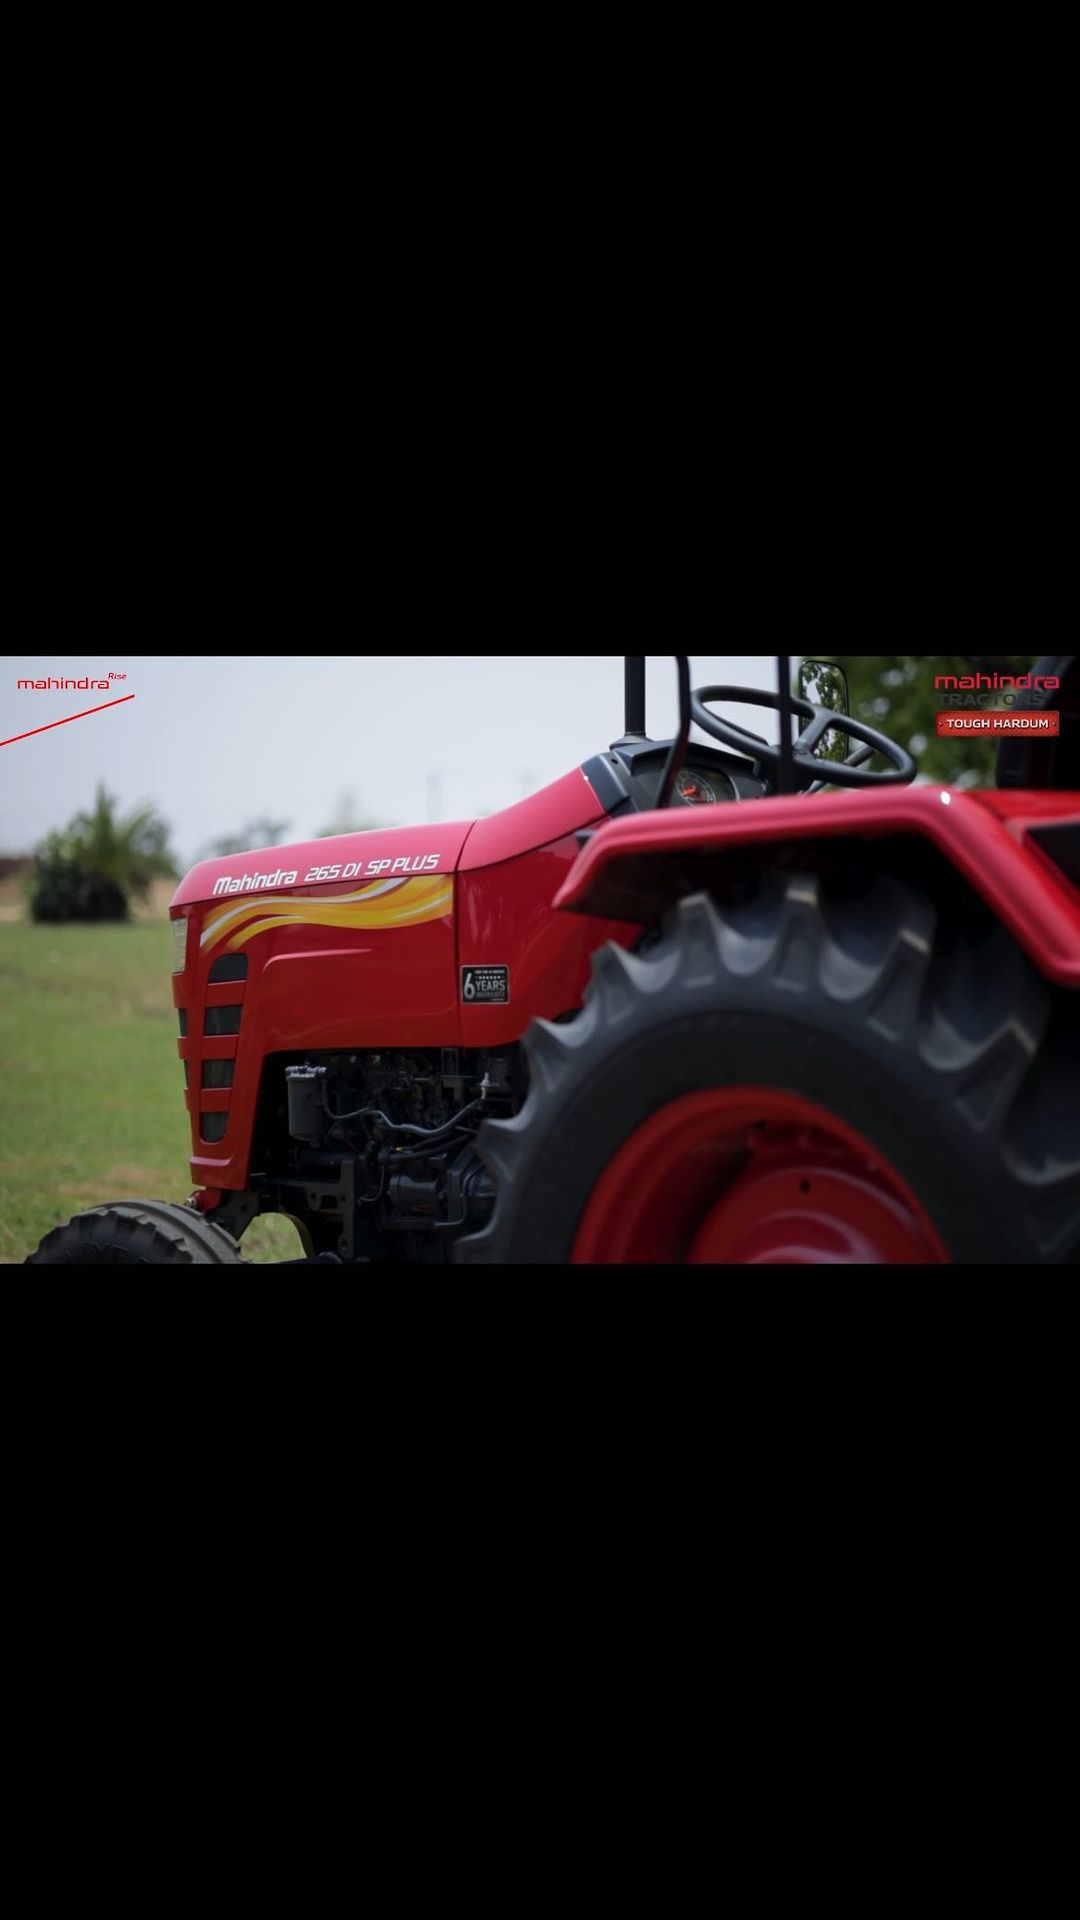 पेश है महिंद्रा 265 DI SP Plus ट्रैक्टर, जो किसानों की सबसे भरोसेमंद और अनुकूल पसंद है। यह इंडस्ट्री का पहला 6 साल की वा...